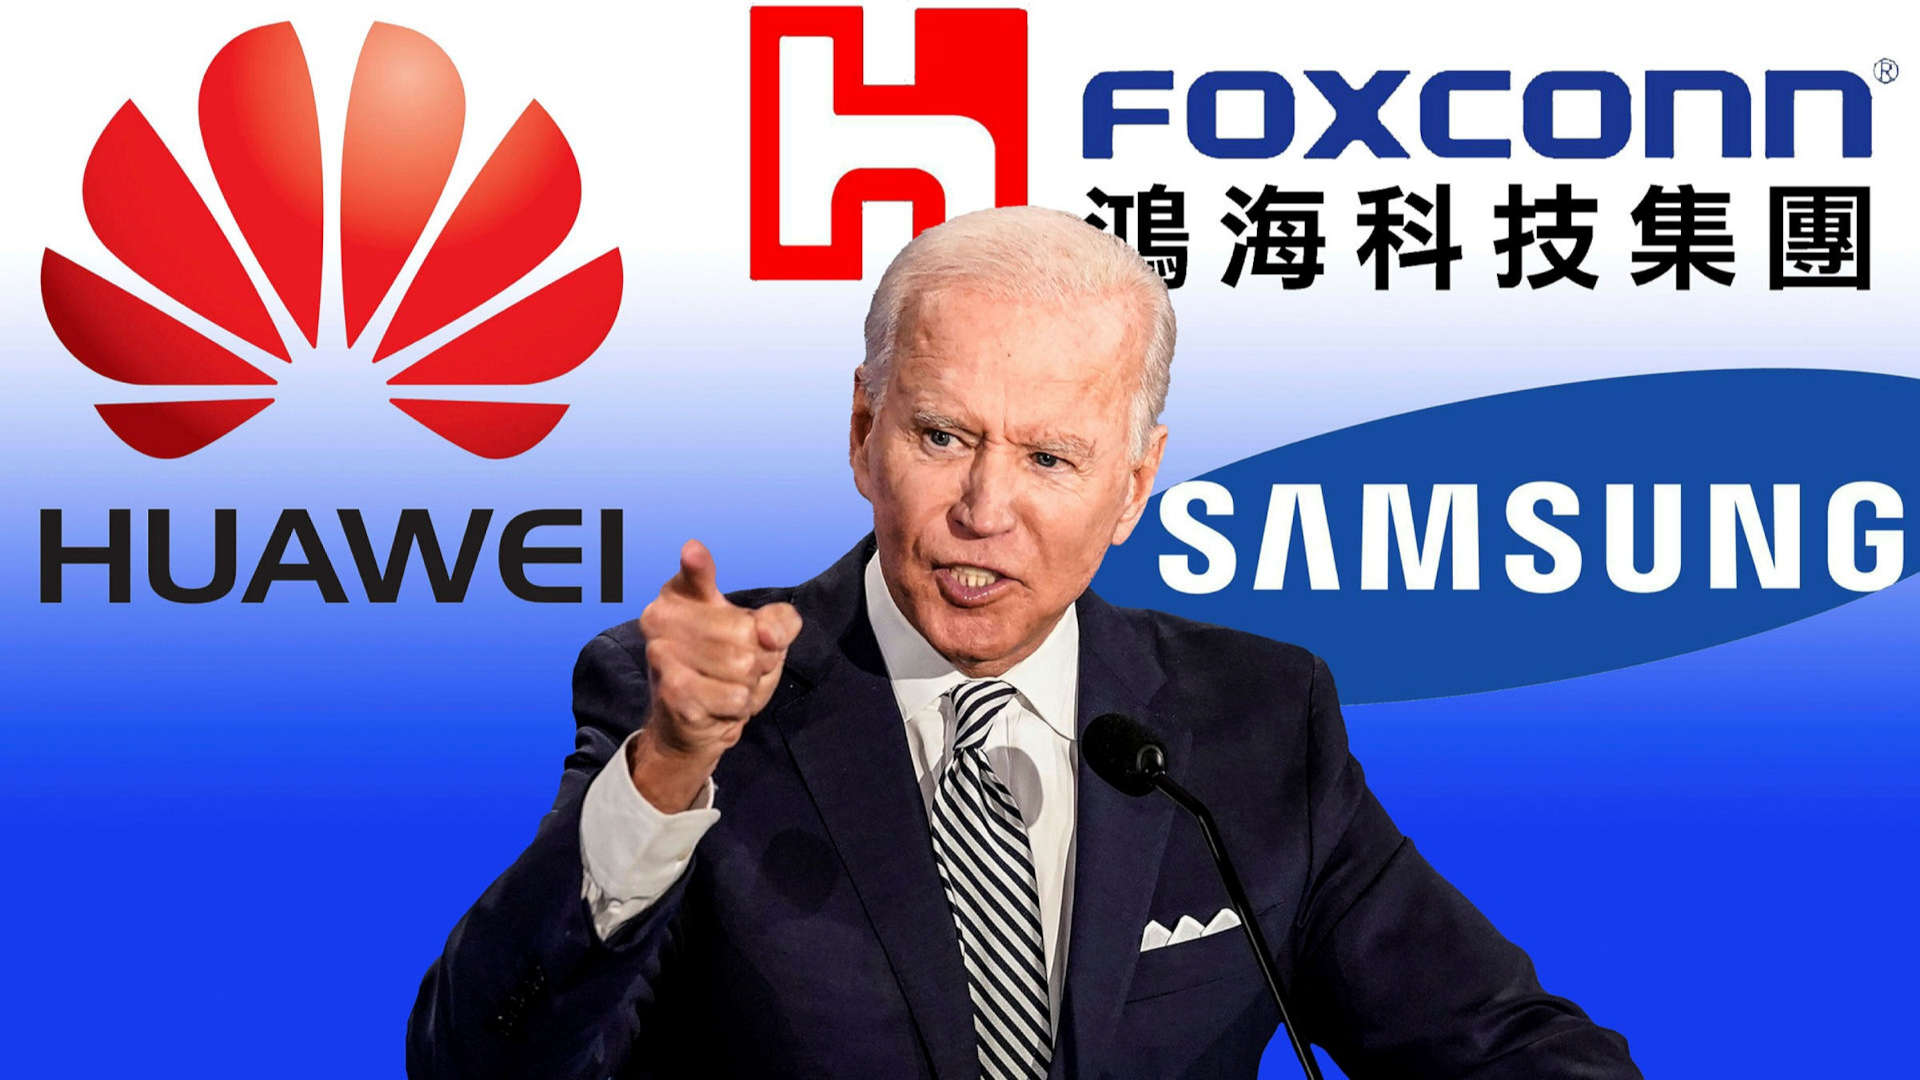 Joe Biden vuelve a discutir la prohibición de EE. UU .: una nueva esperanza  para Huawei - GizChina.it